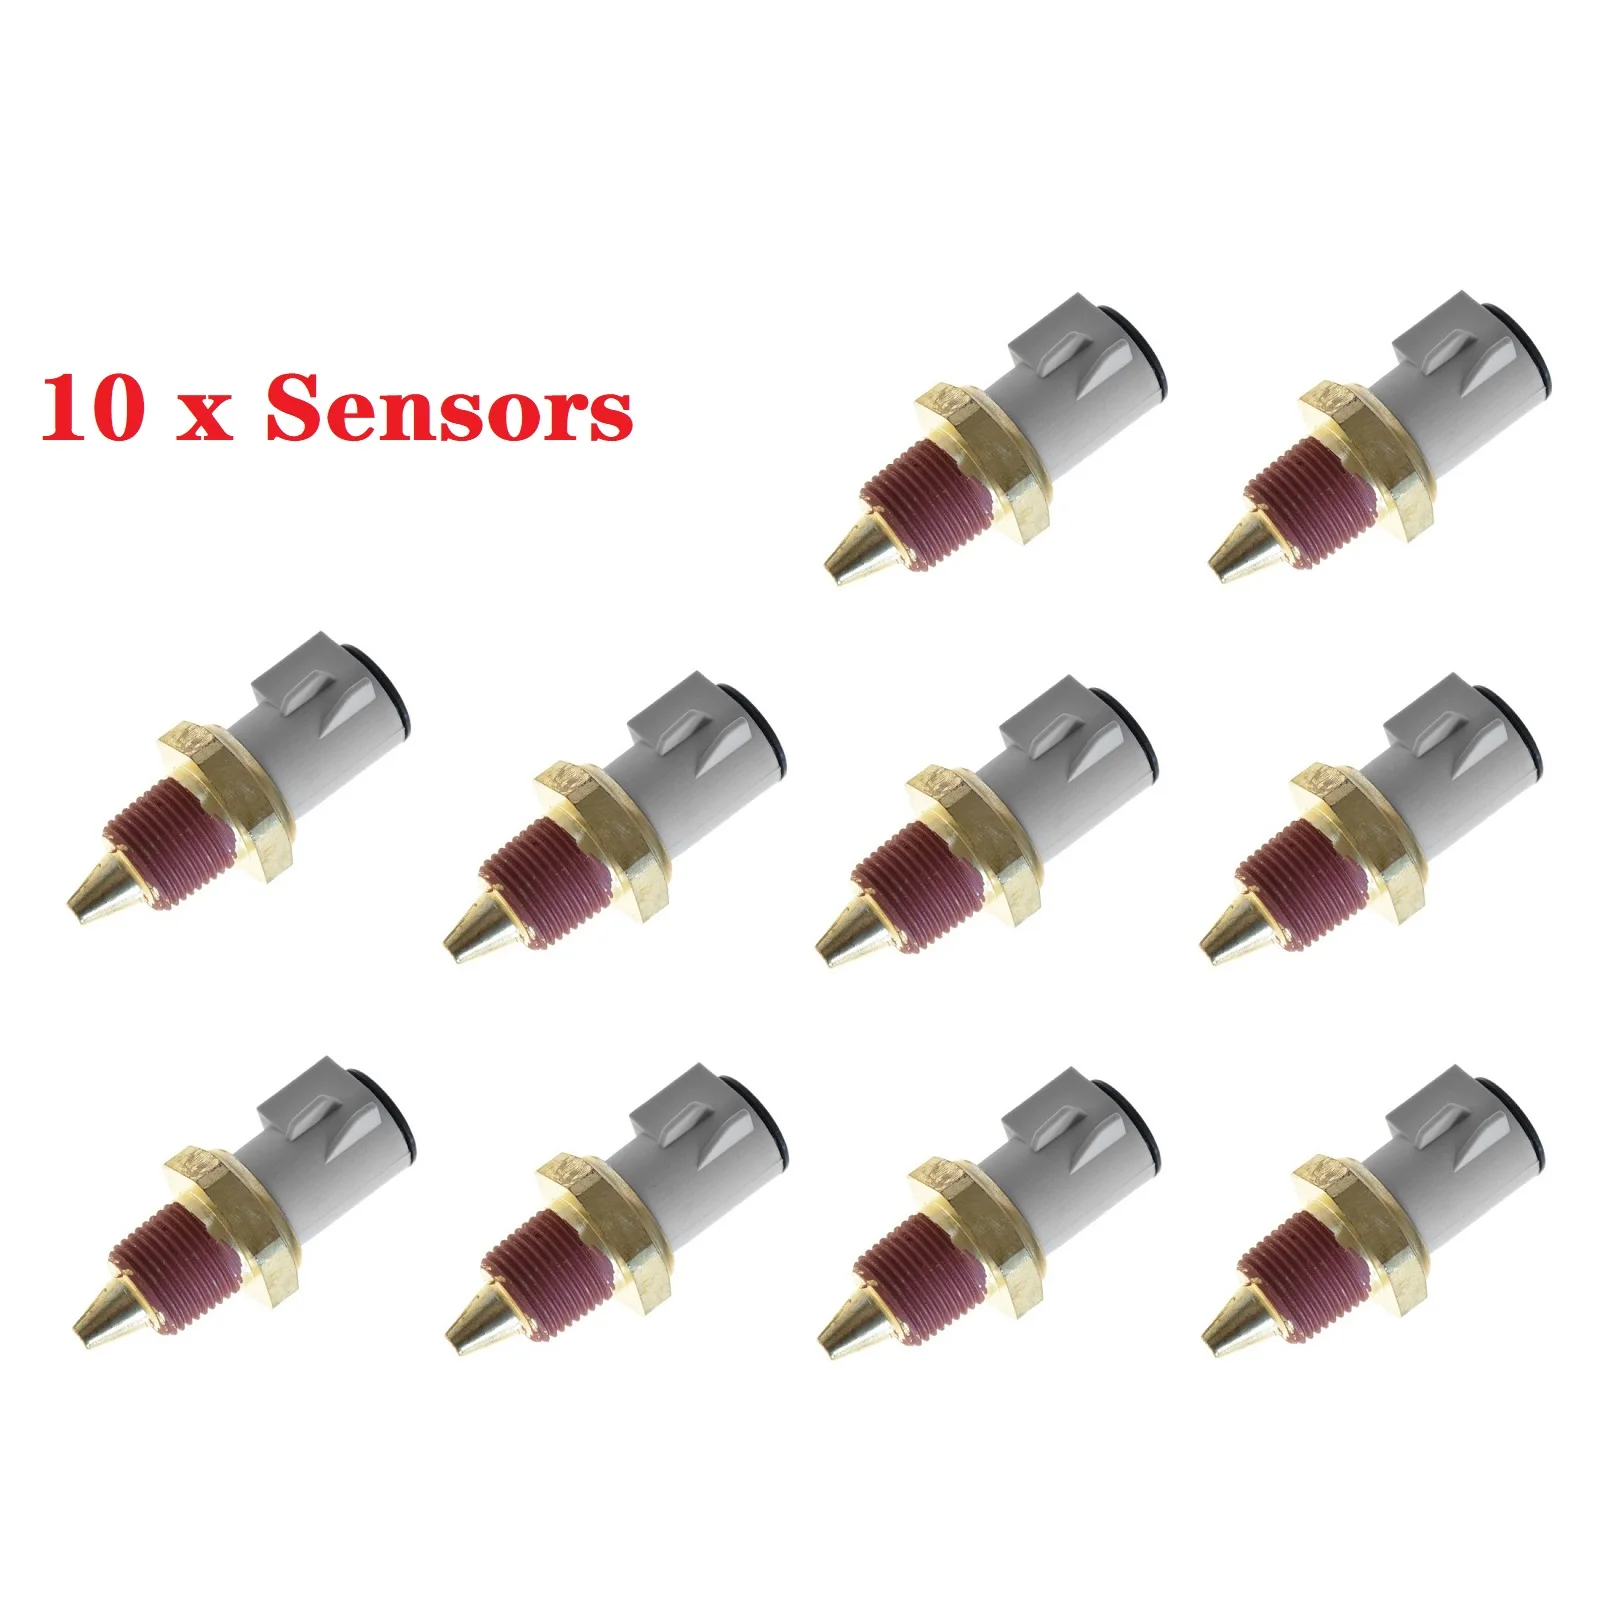 Coolant Temperature Sensor Sender 2 Pin for Ford Lincoln Mercury Merkur  E0AZ12A648A, E1AZ12A648A, F1AZ12A648B, F2AZ12A648A - AliExpress